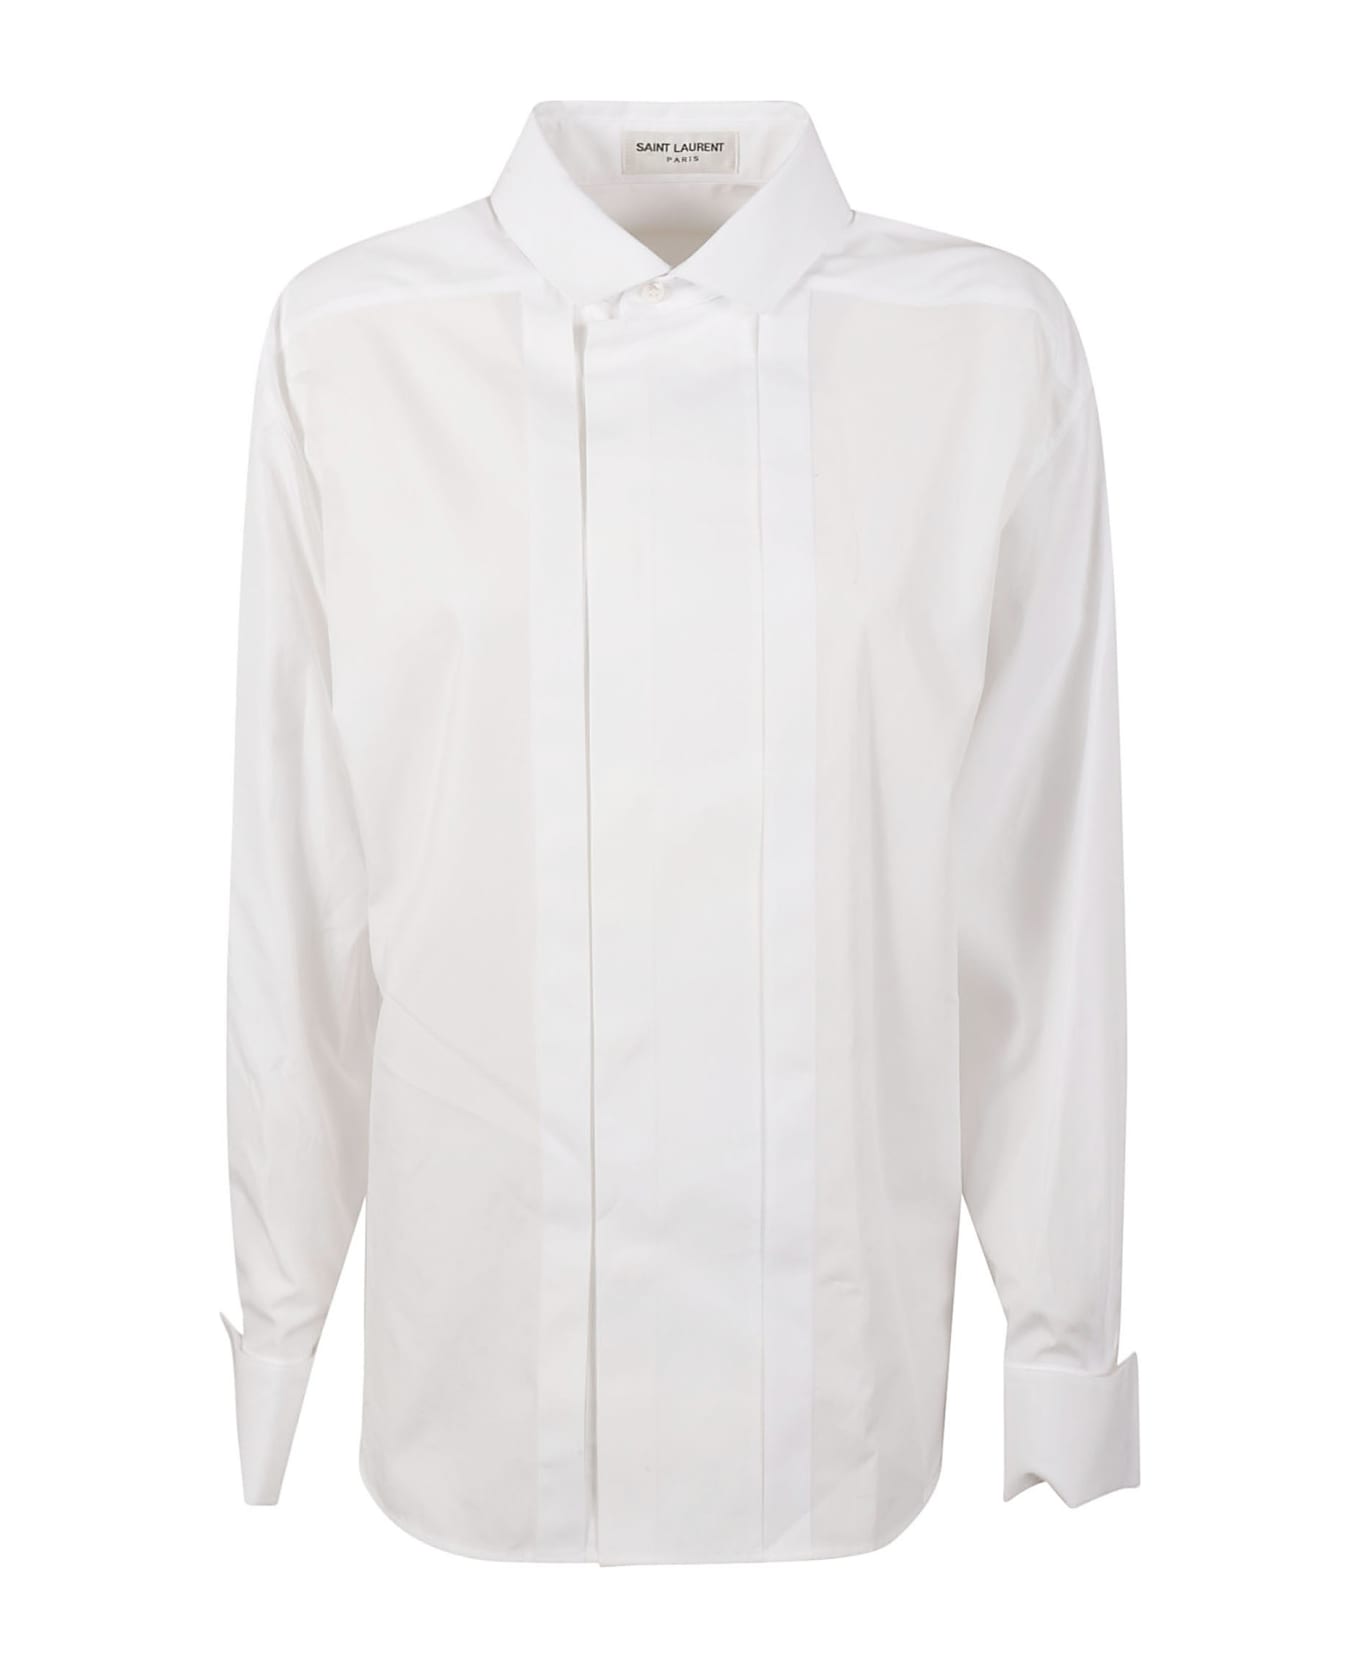 Saint Laurent Popeline Shirt - WHITE シャツ